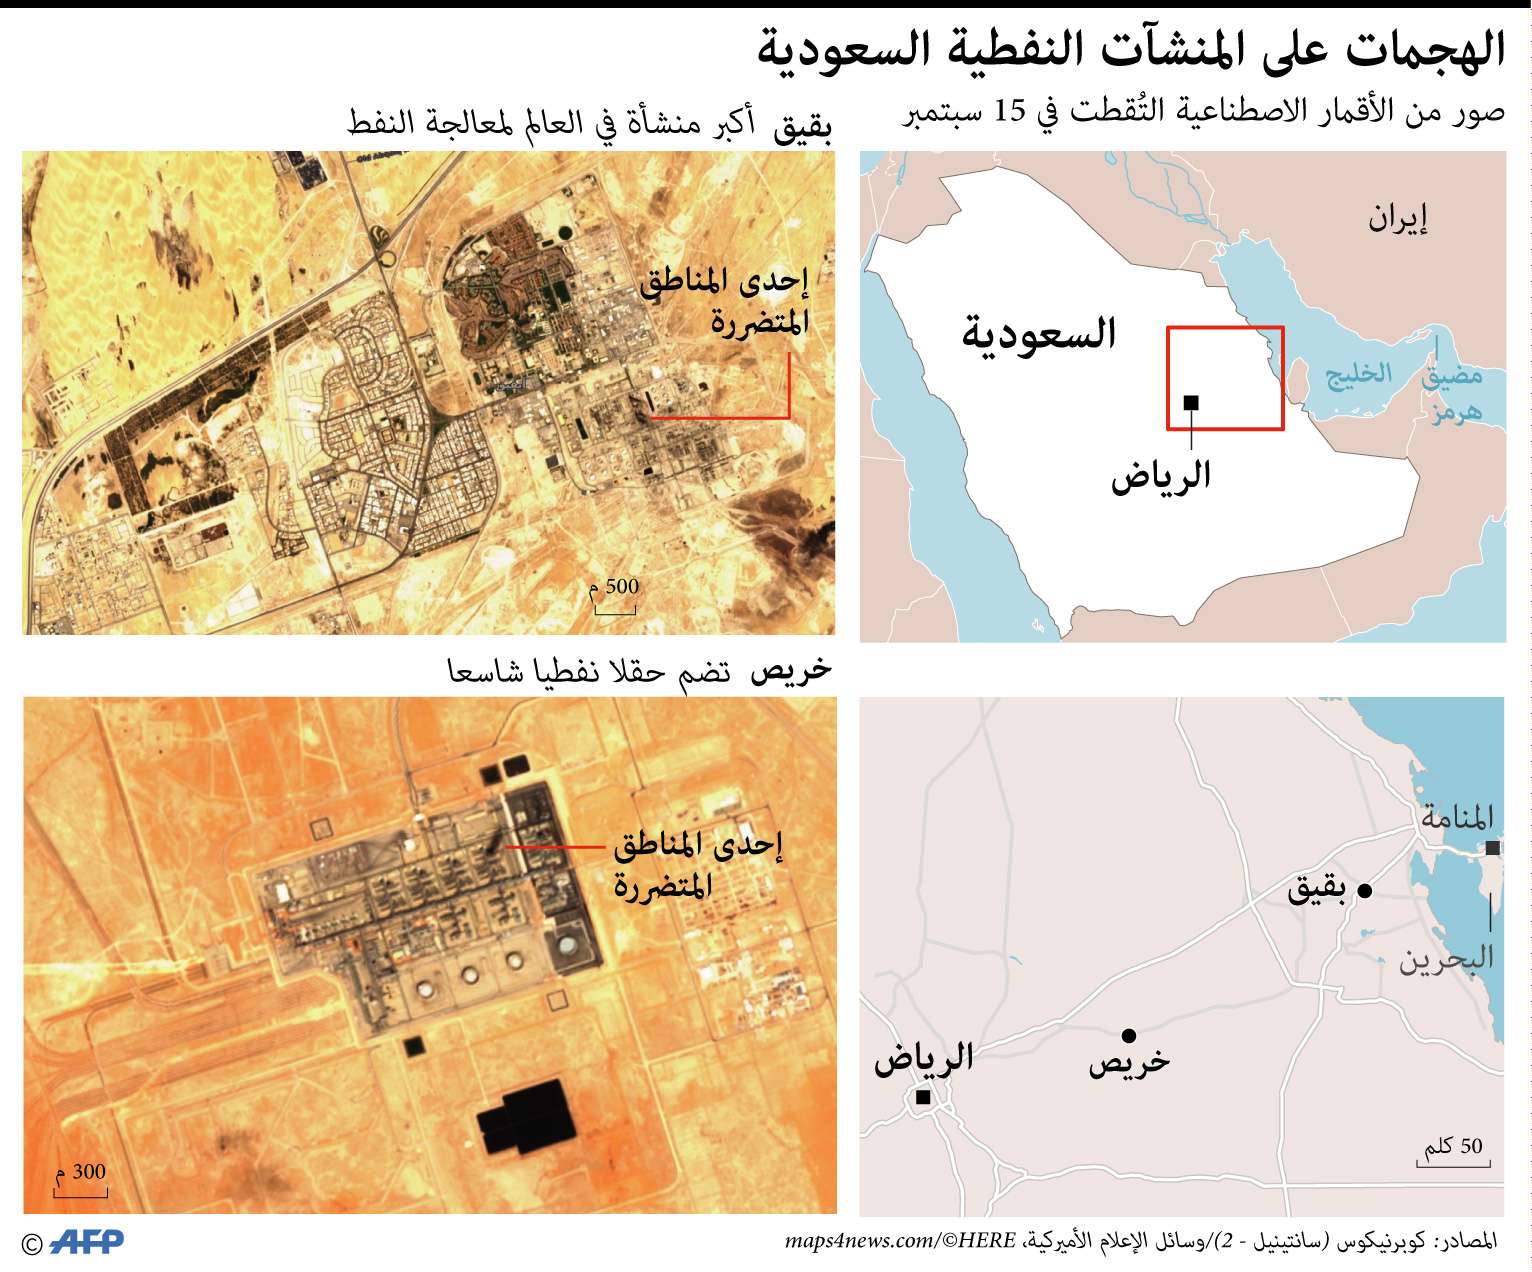 غرافيك الهجوم على منشآت نفطية في السعودية